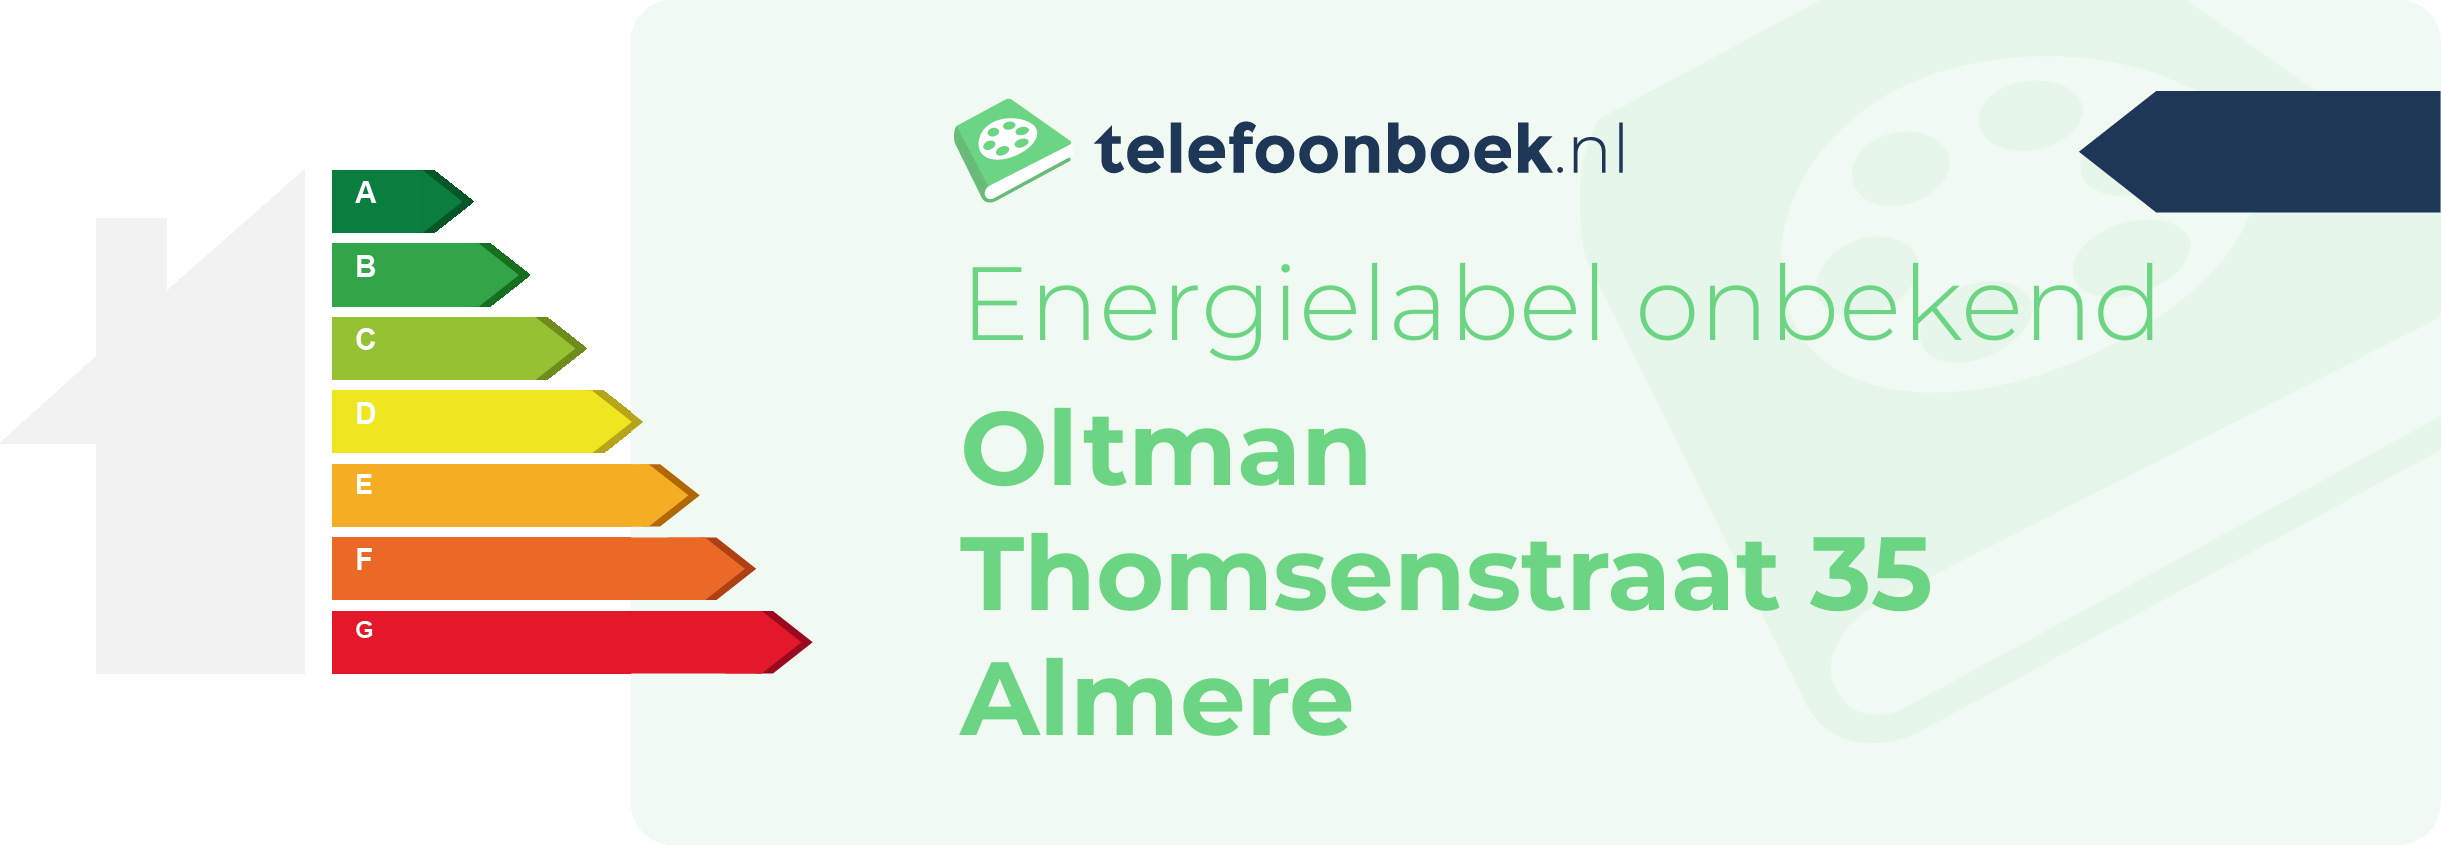 Energielabel Oltman Thomsenstraat 35 Almere